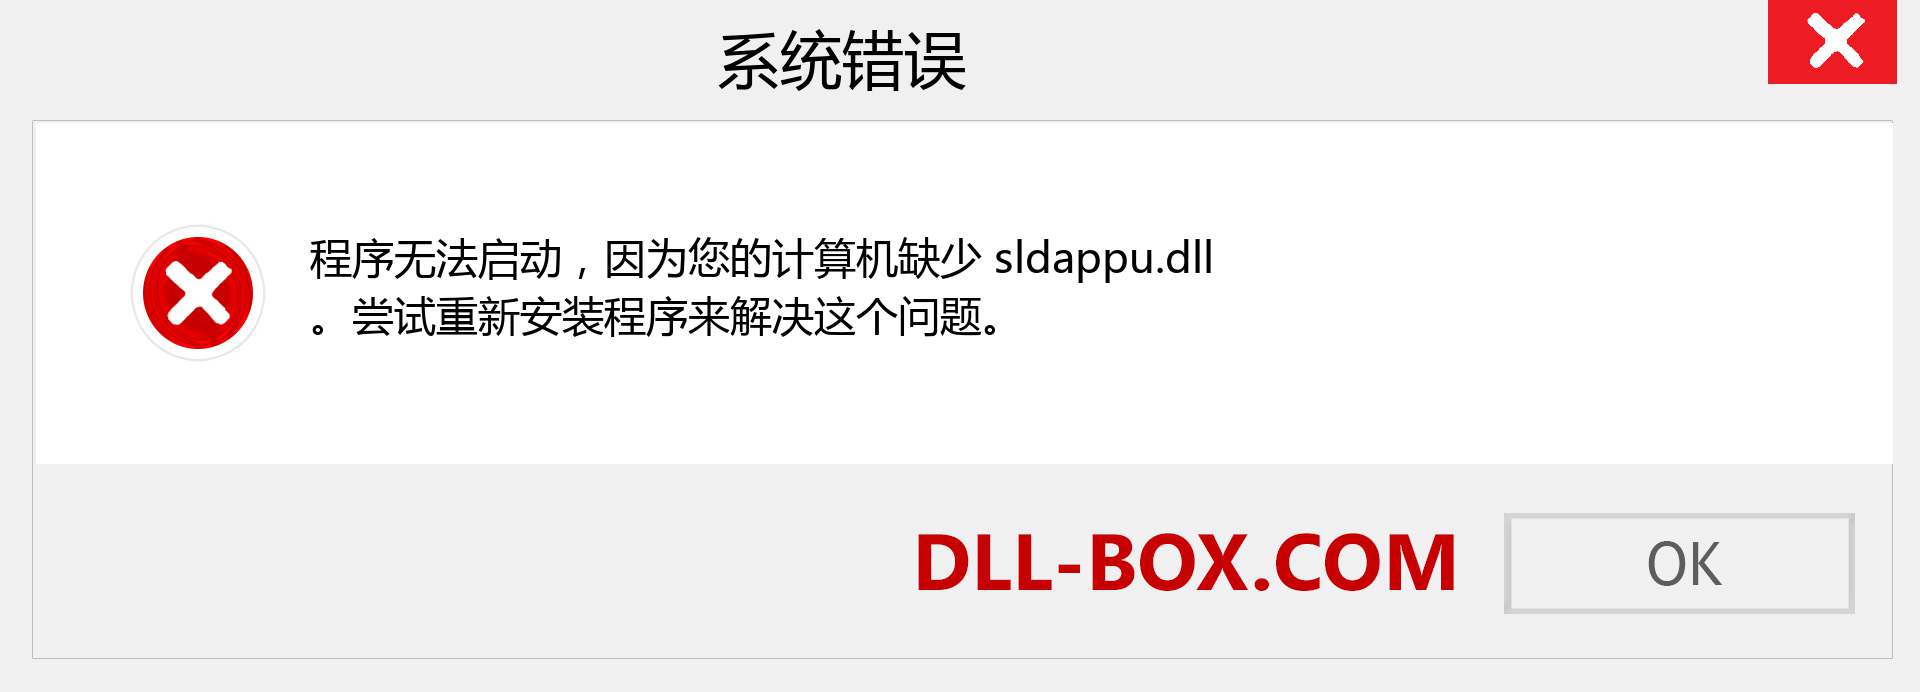 sldappu.dll 文件丢失？。 适用于 Windows 7、8、10 的下载 - 修复 Windows、照片、图像上的 sldappu dll 丢失错误